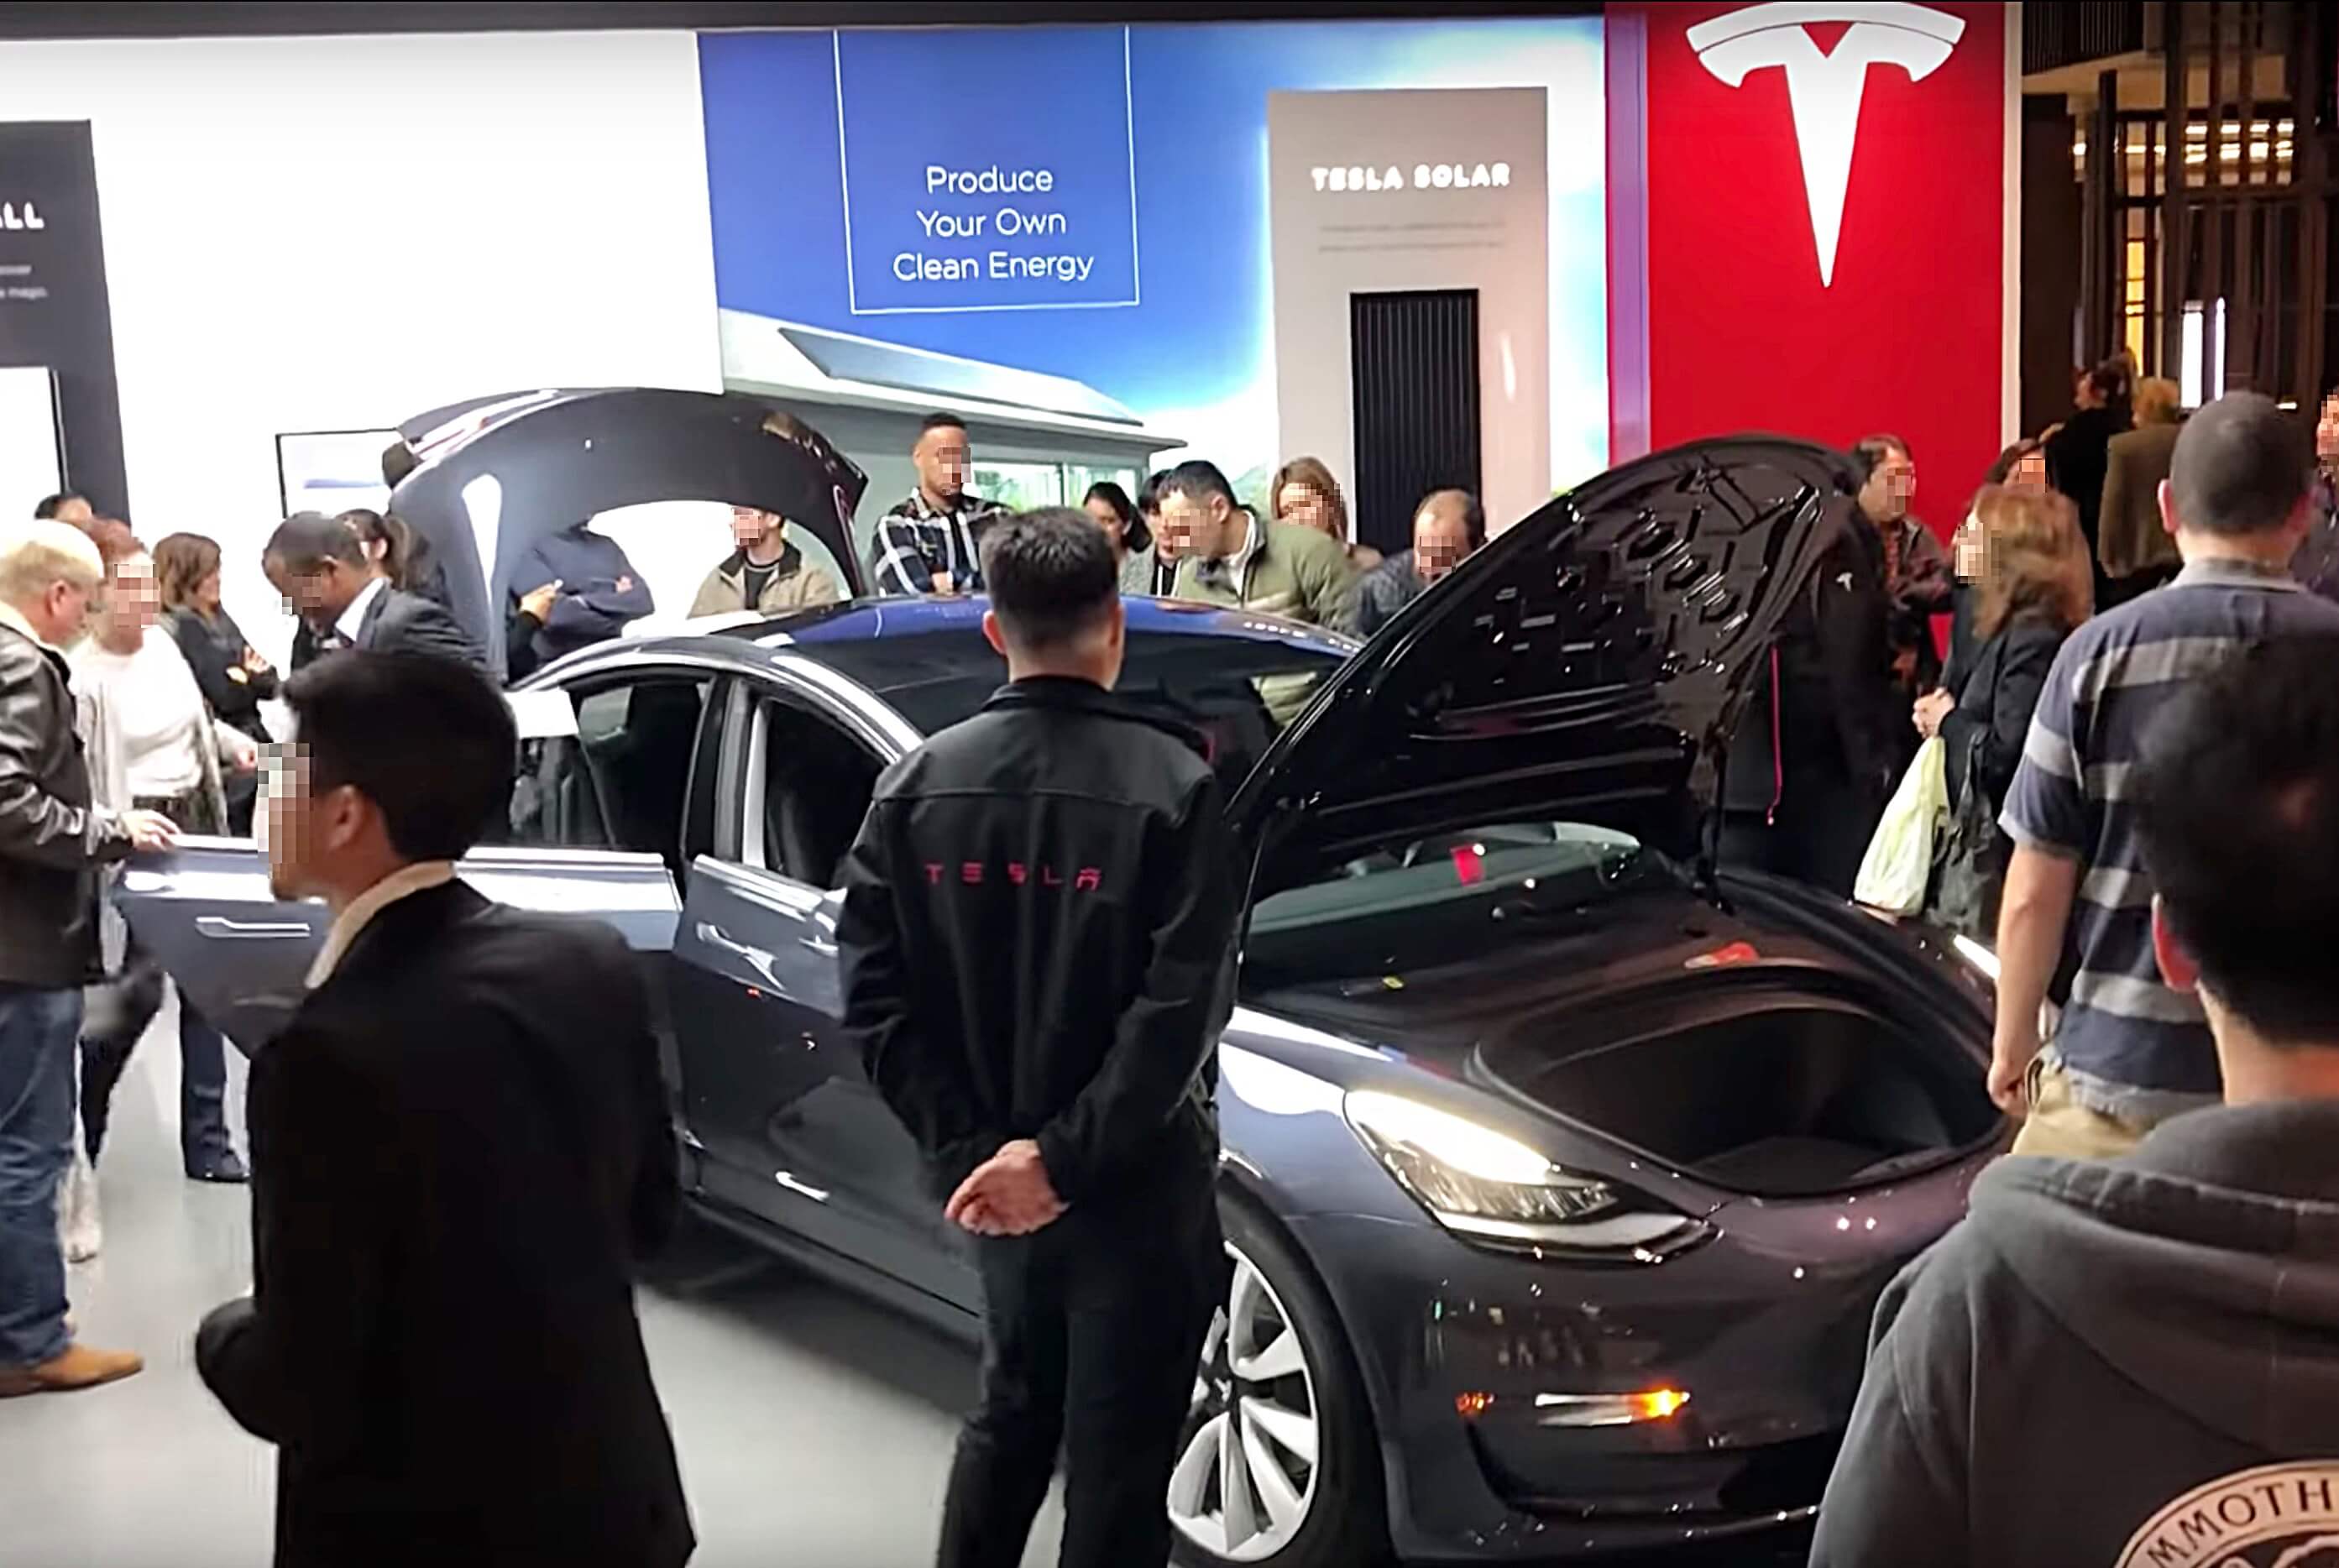 De belangstelling voor Tesla schoot omhoog op de site van Edmunds na prijsverlagingen